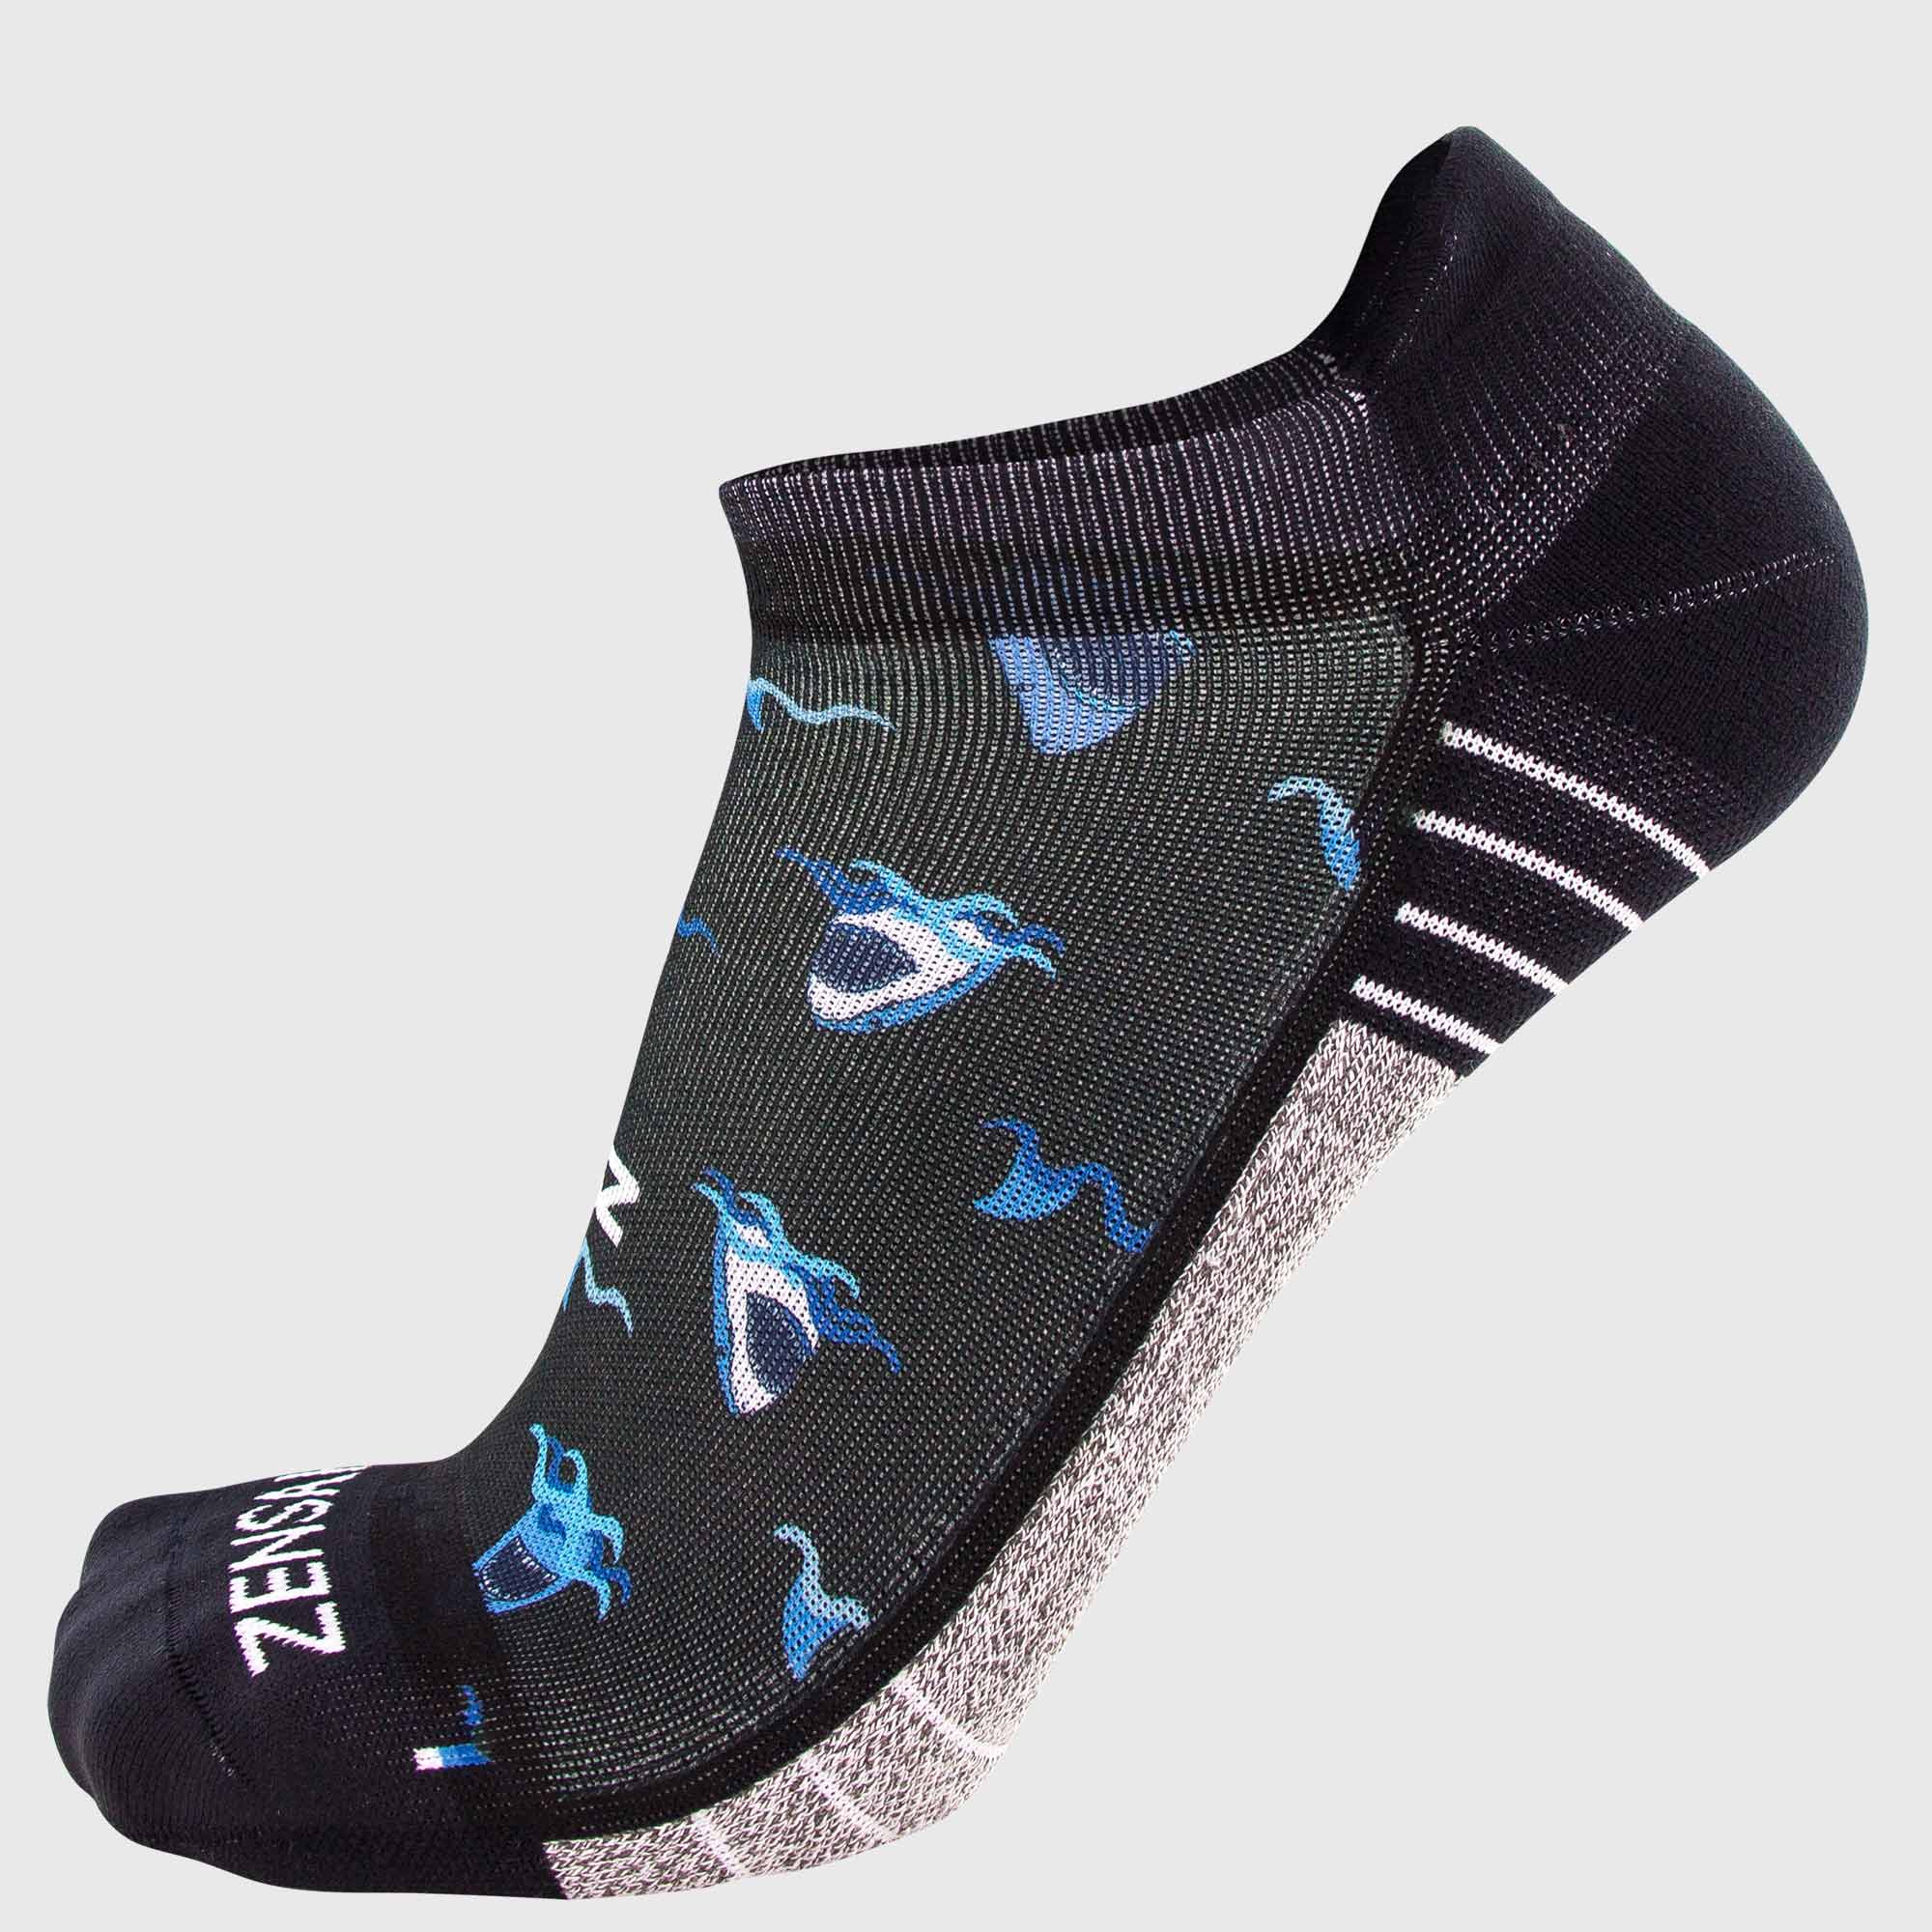 Shark Running Socks (No Show) - Zensah